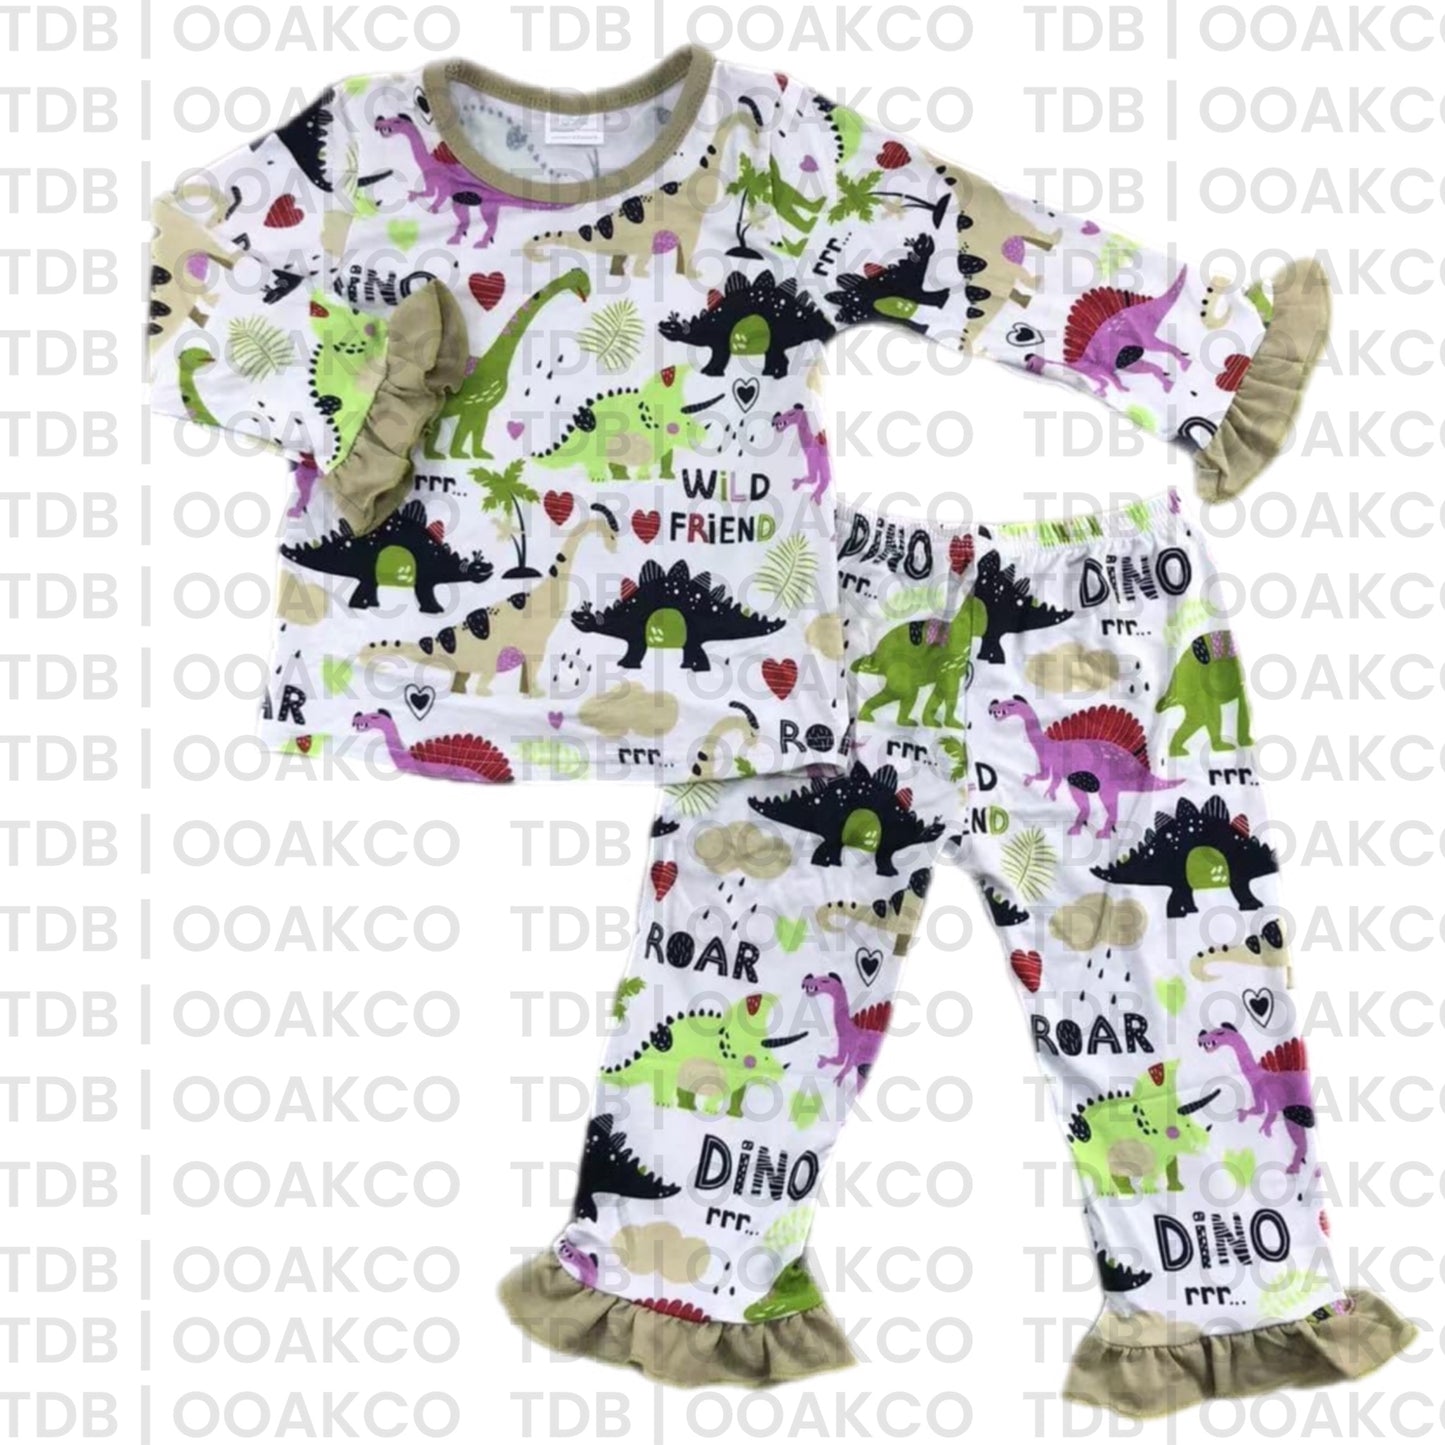 ᴡᴇᴇᴋʟʏ ᴘʀᴇ ᴏʀᴅᴇʀ Bamboo Dino Pajamas